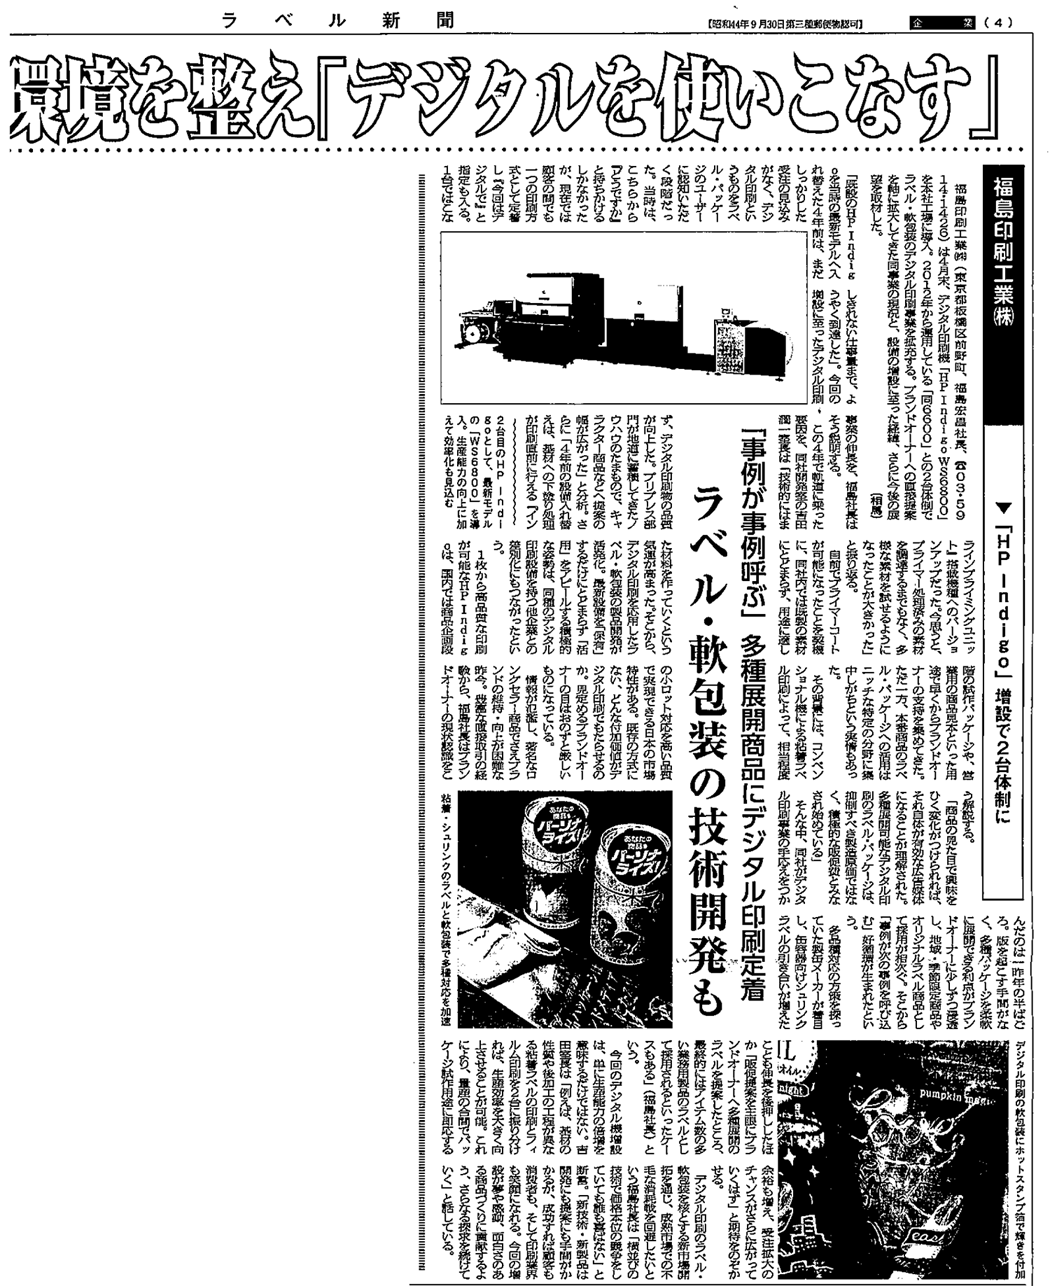 メディア掲載記事04 福島印刷工業株式会社